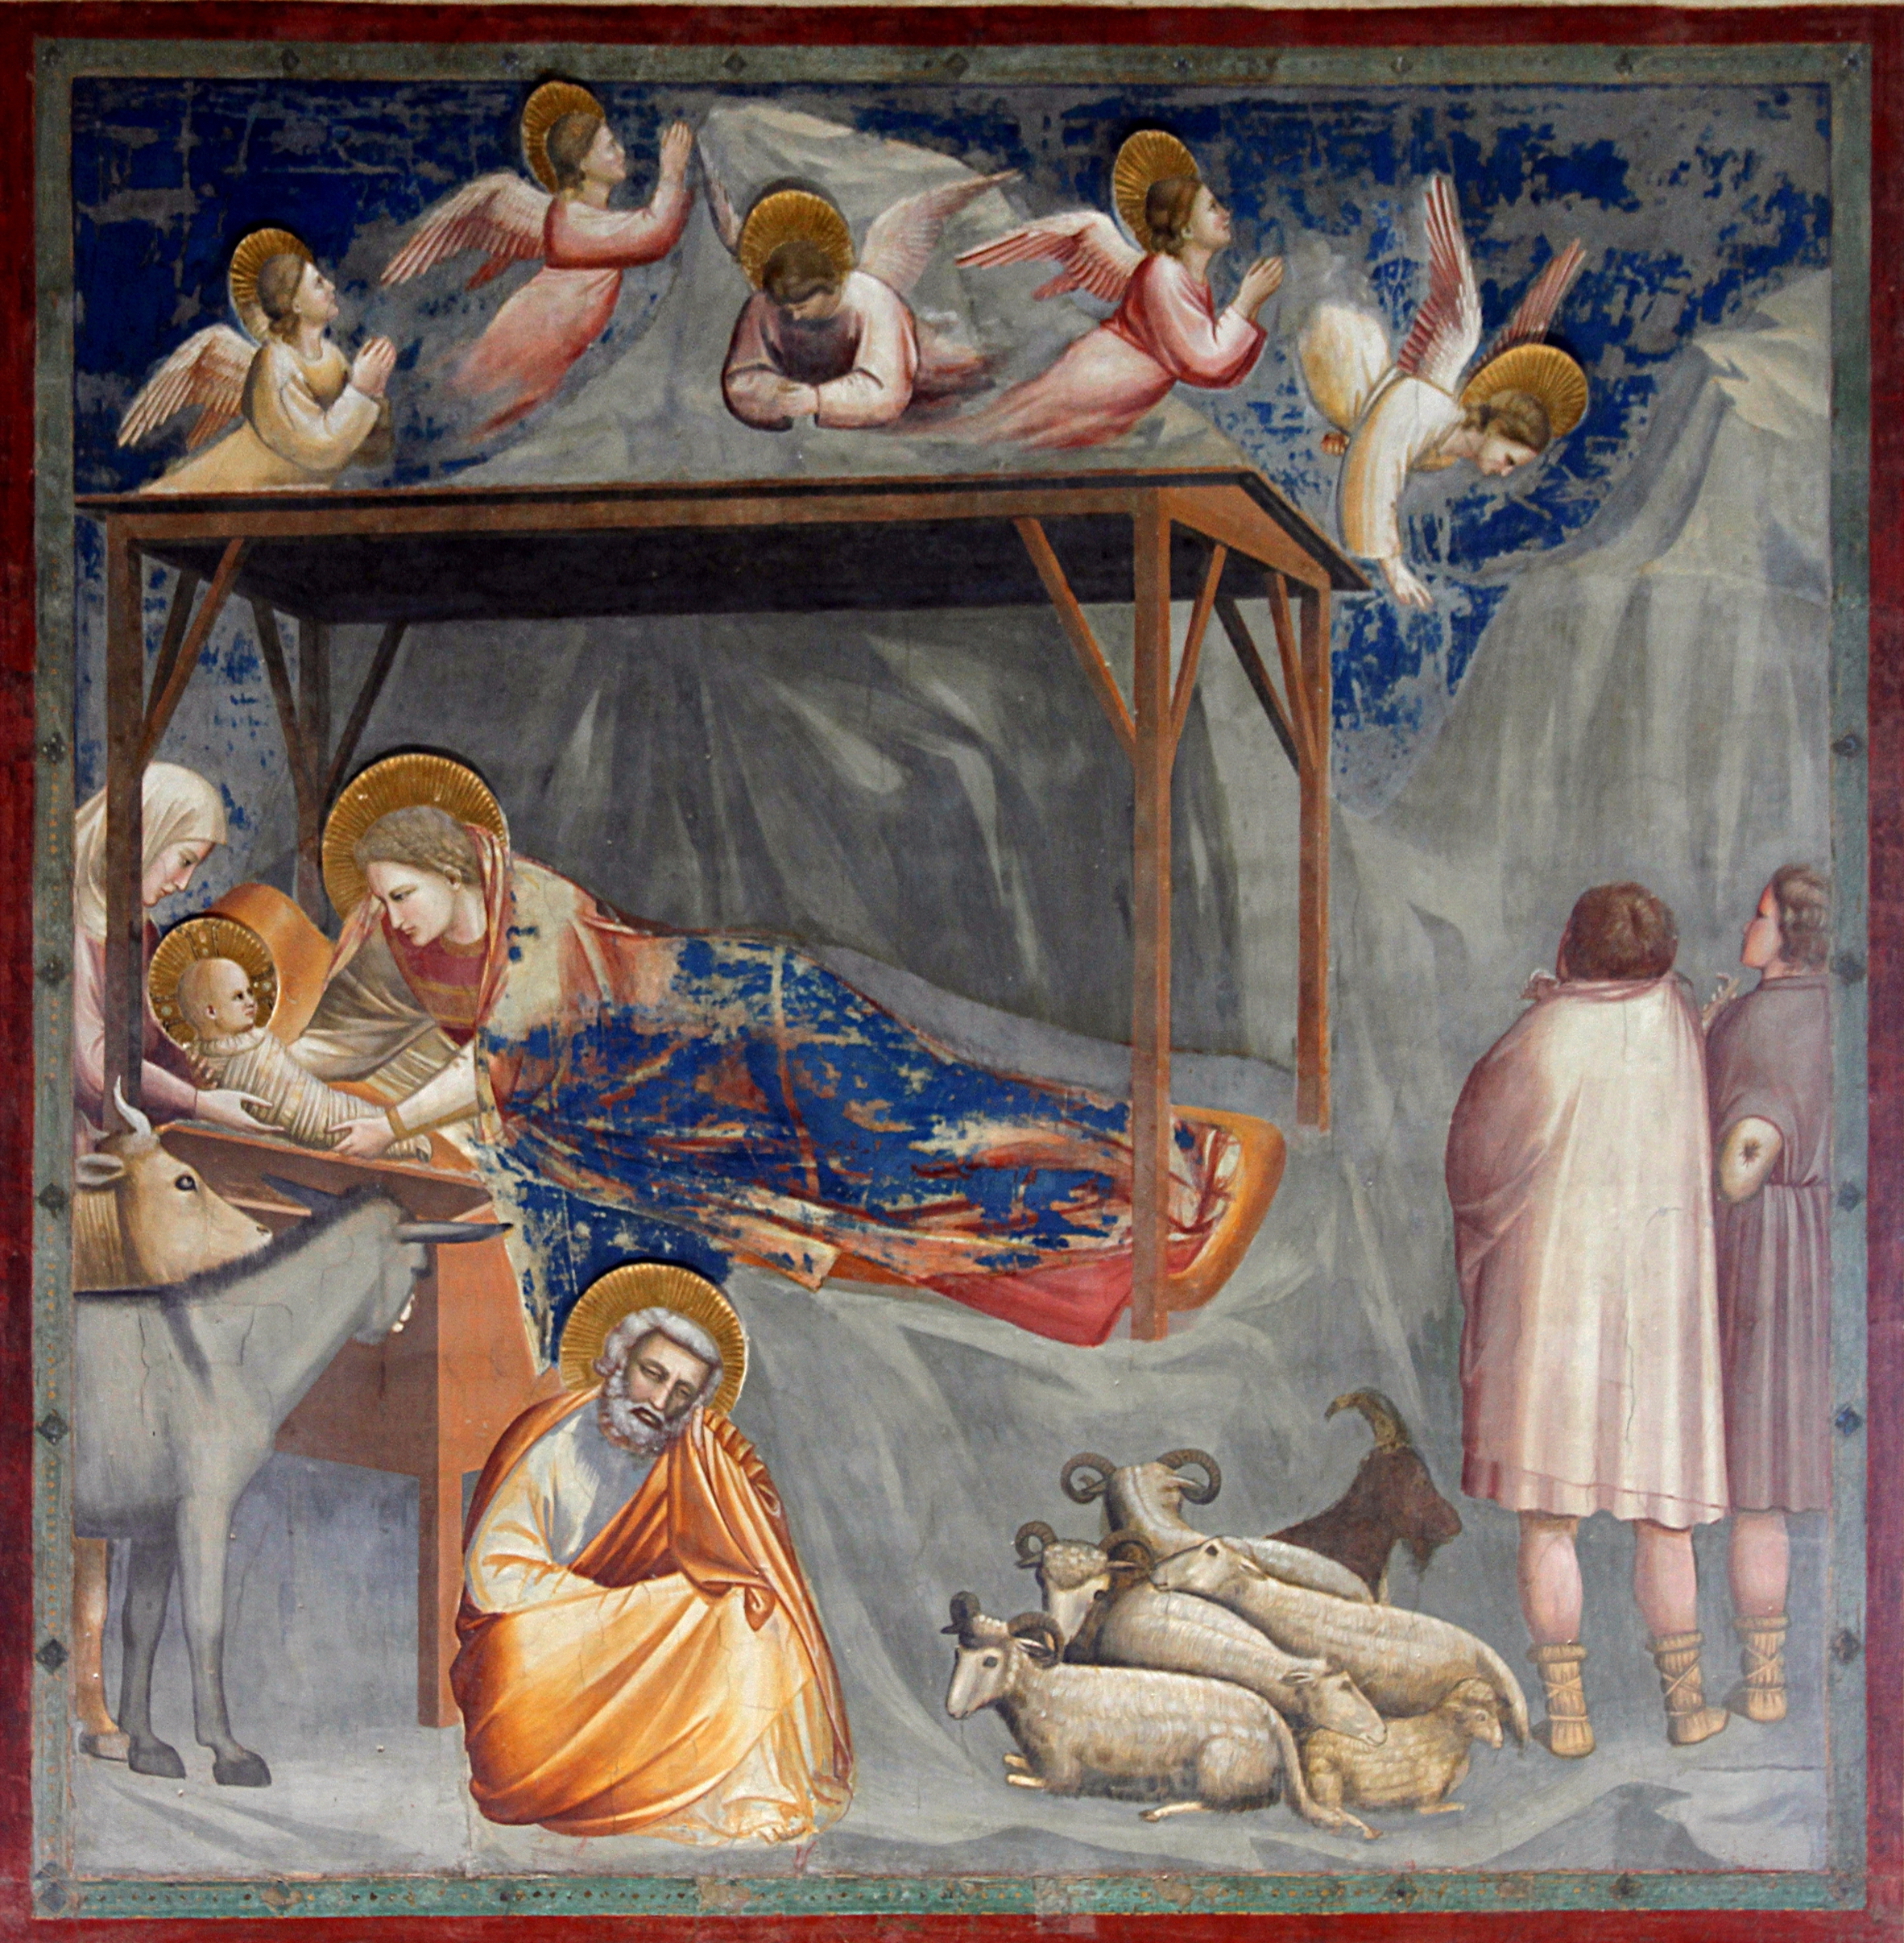 Natività by Giotto di Bondone - 1303-1305 - 200 x 185 cm 